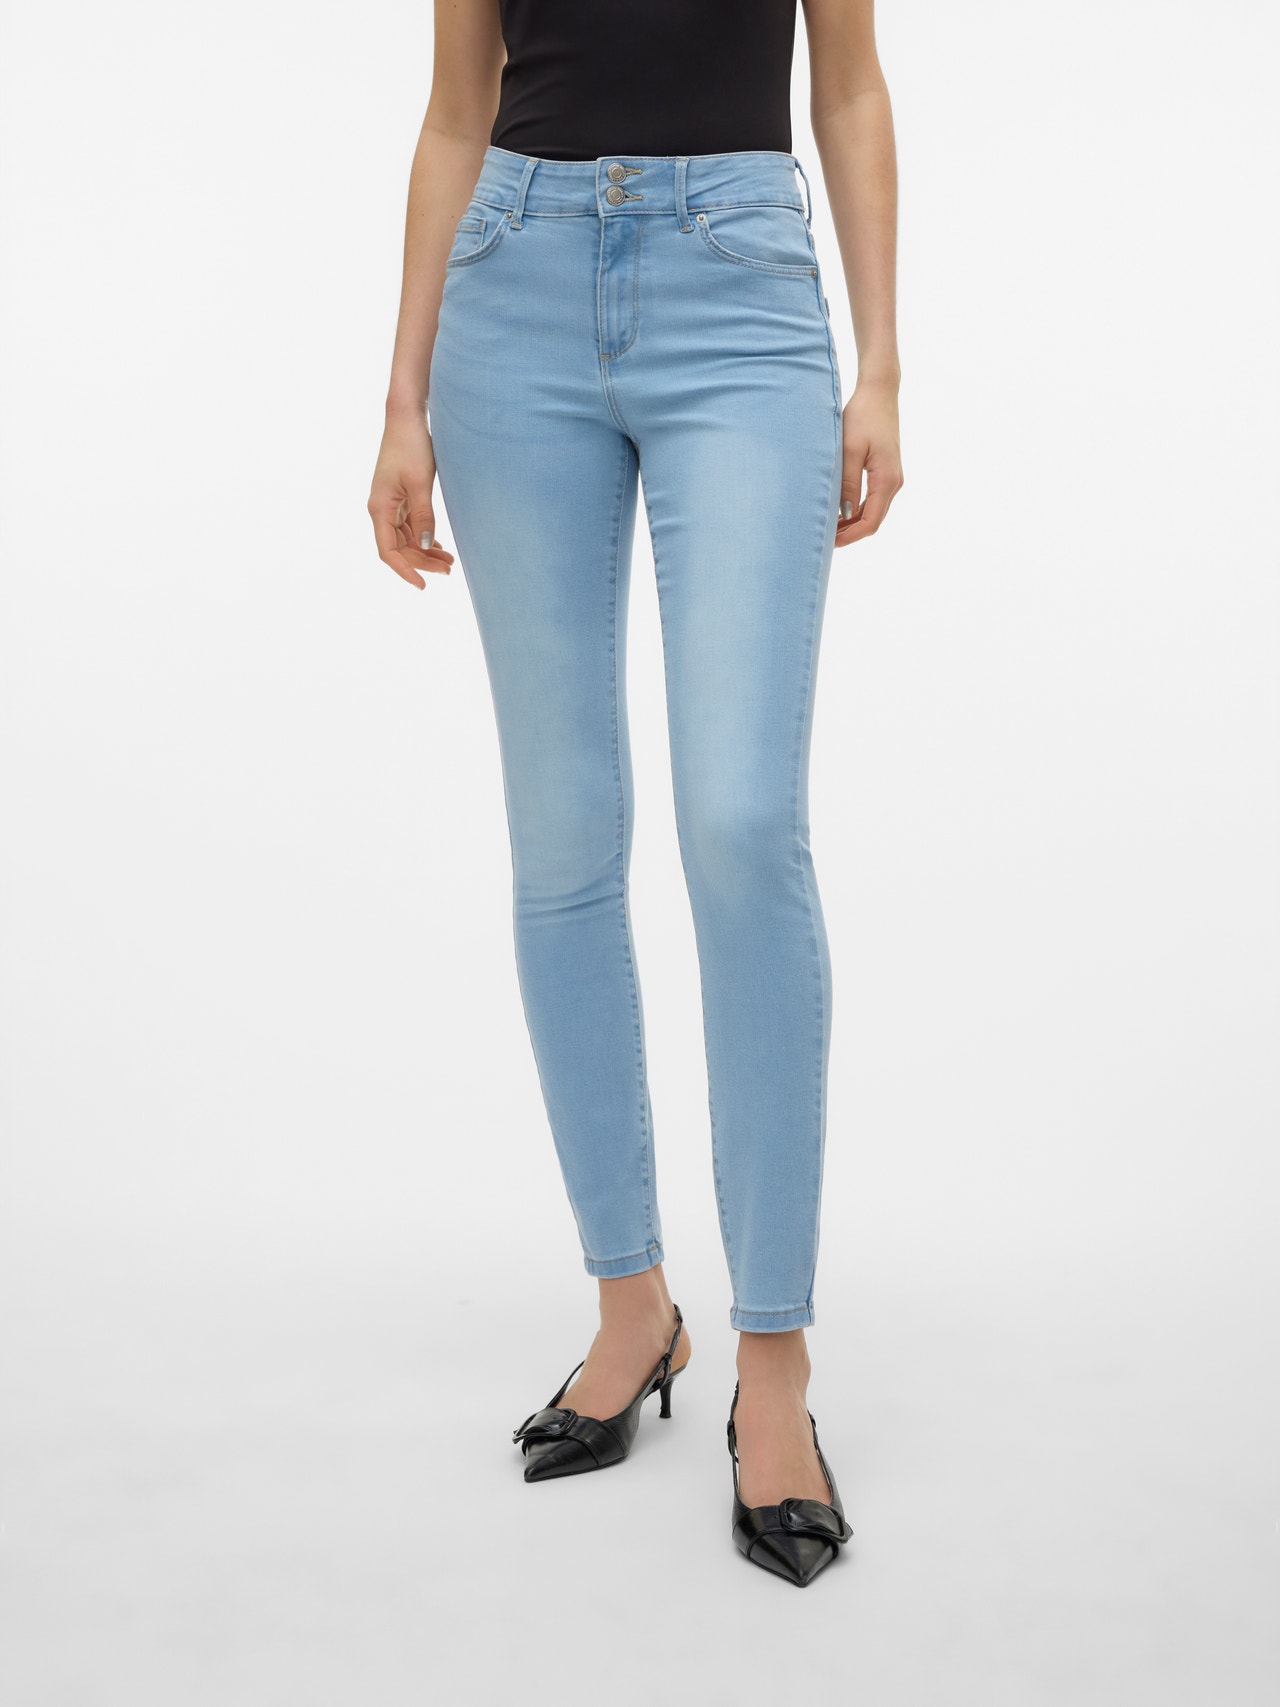 Vero Moda VMSOPHIA Vita alta Slim Fit Jeans -Light Blue Denim - 10305173